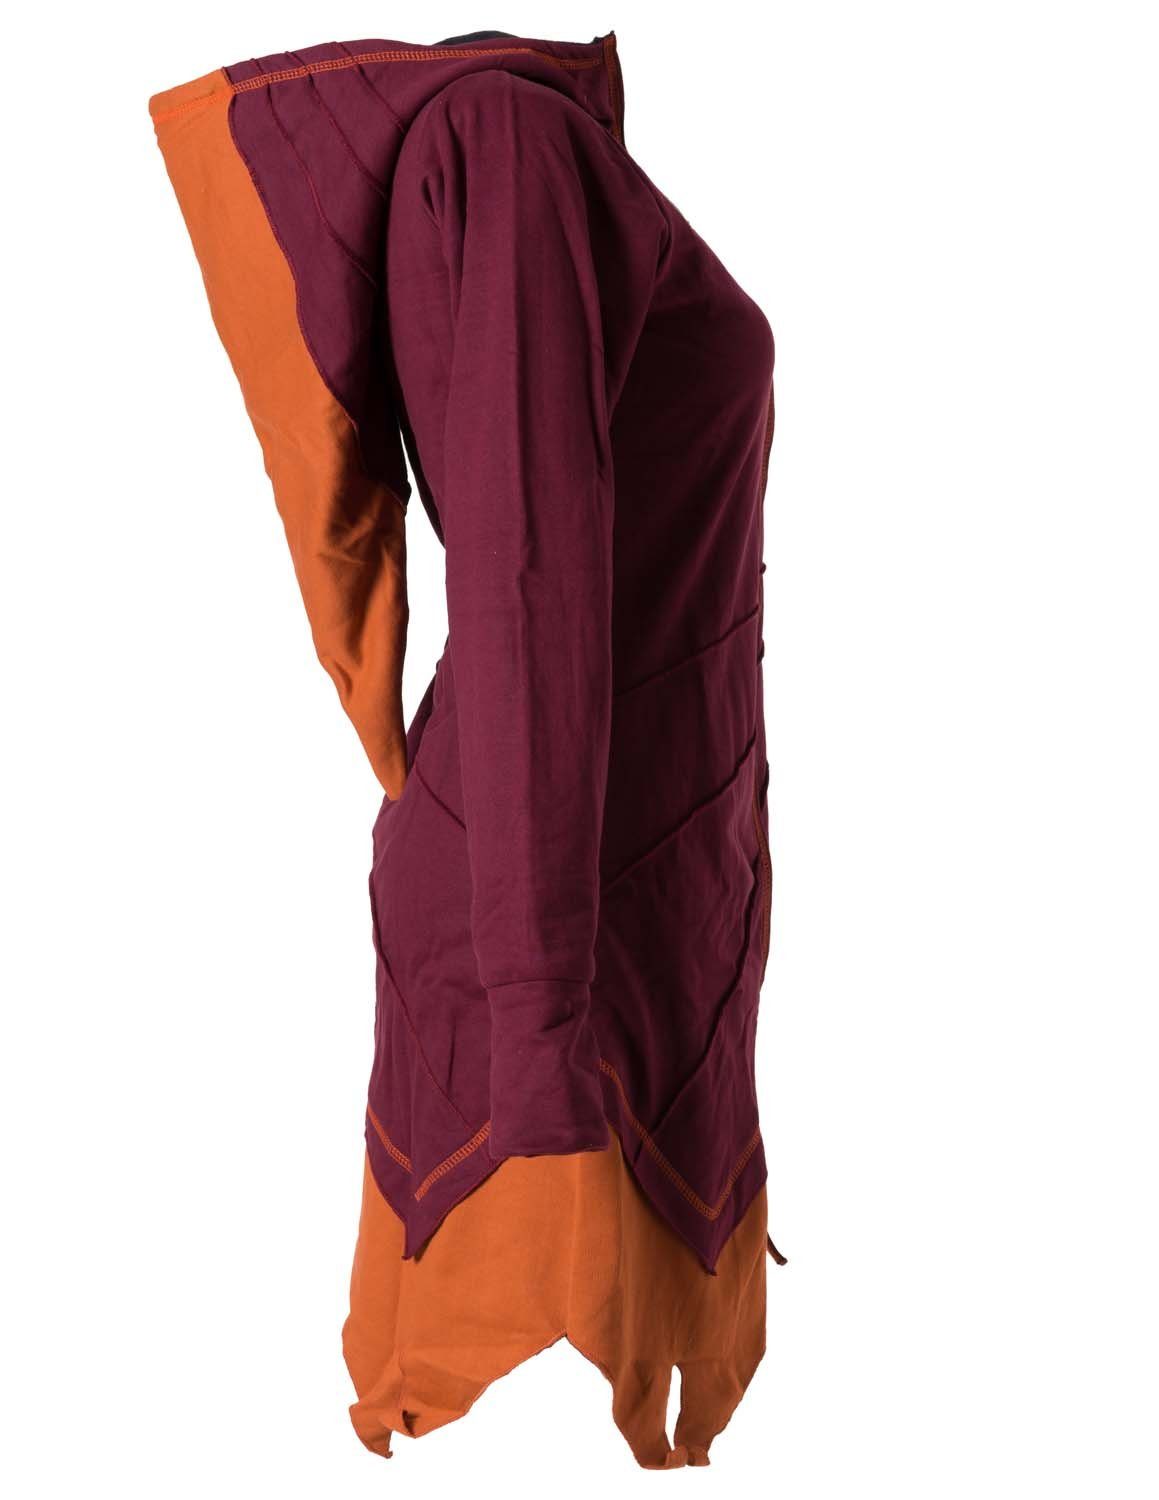 Vishes Kapuzensweatjacke Asymmetrischer - Mantel Zipfelkapuze Daumenlöcher Patchwork rot-orange